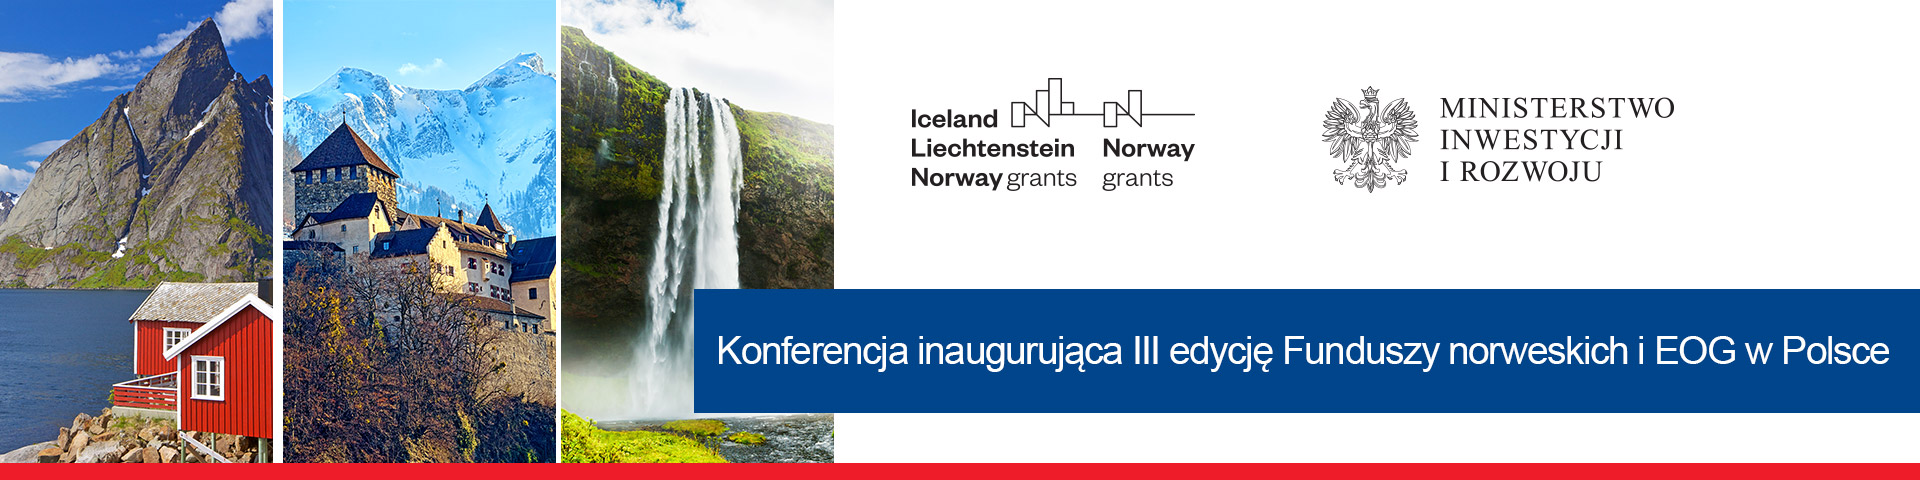 zaproszenie na konferencję otwierającą trzecią rundę funduszy norweskich i EOG